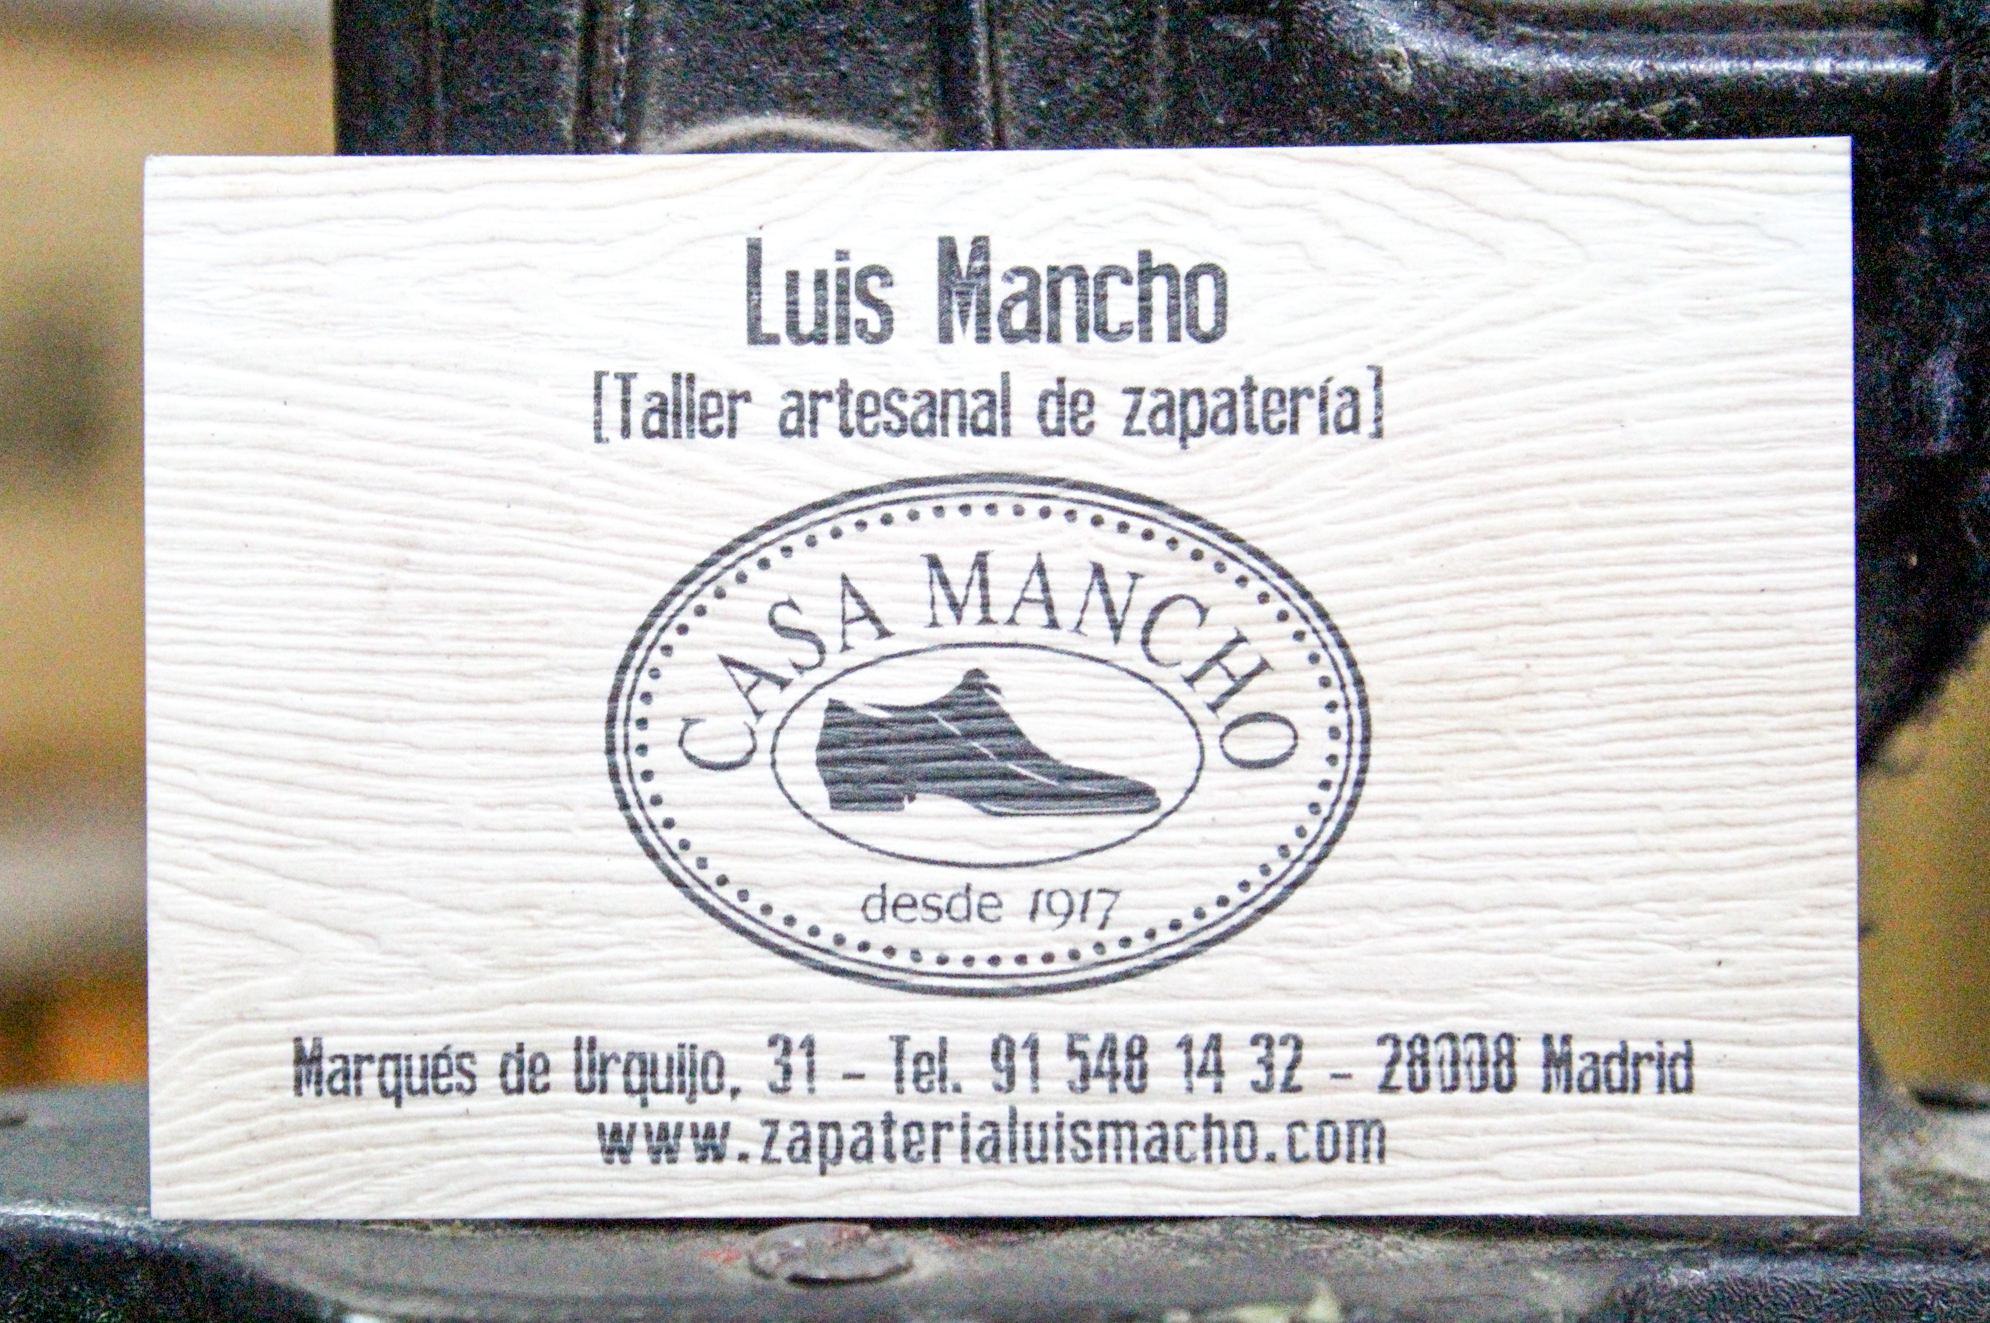 Taller Artesanal de Zapatería Luis Mancho, Madrid.